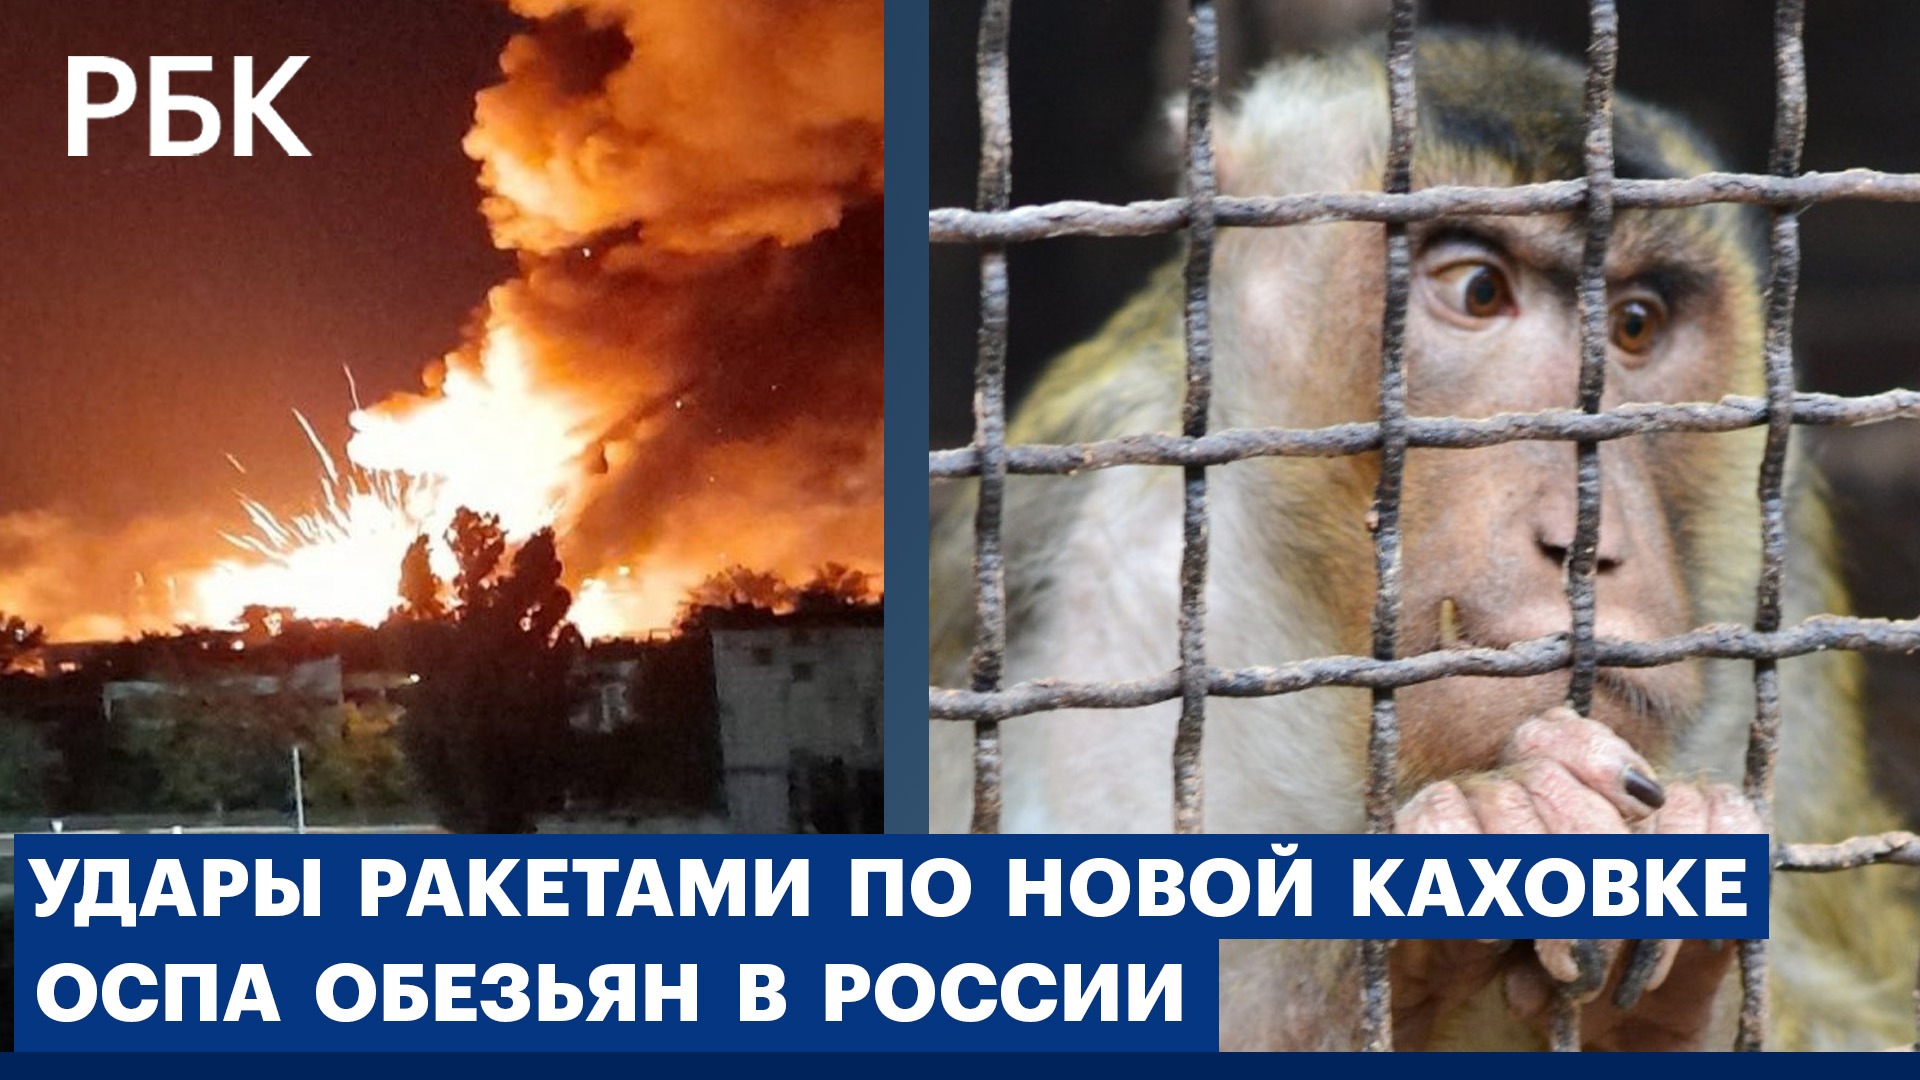 Первый случай заражения оспой обезьян в России. Удар ракетами HIMARS по Новой Каховке. €1 = $1